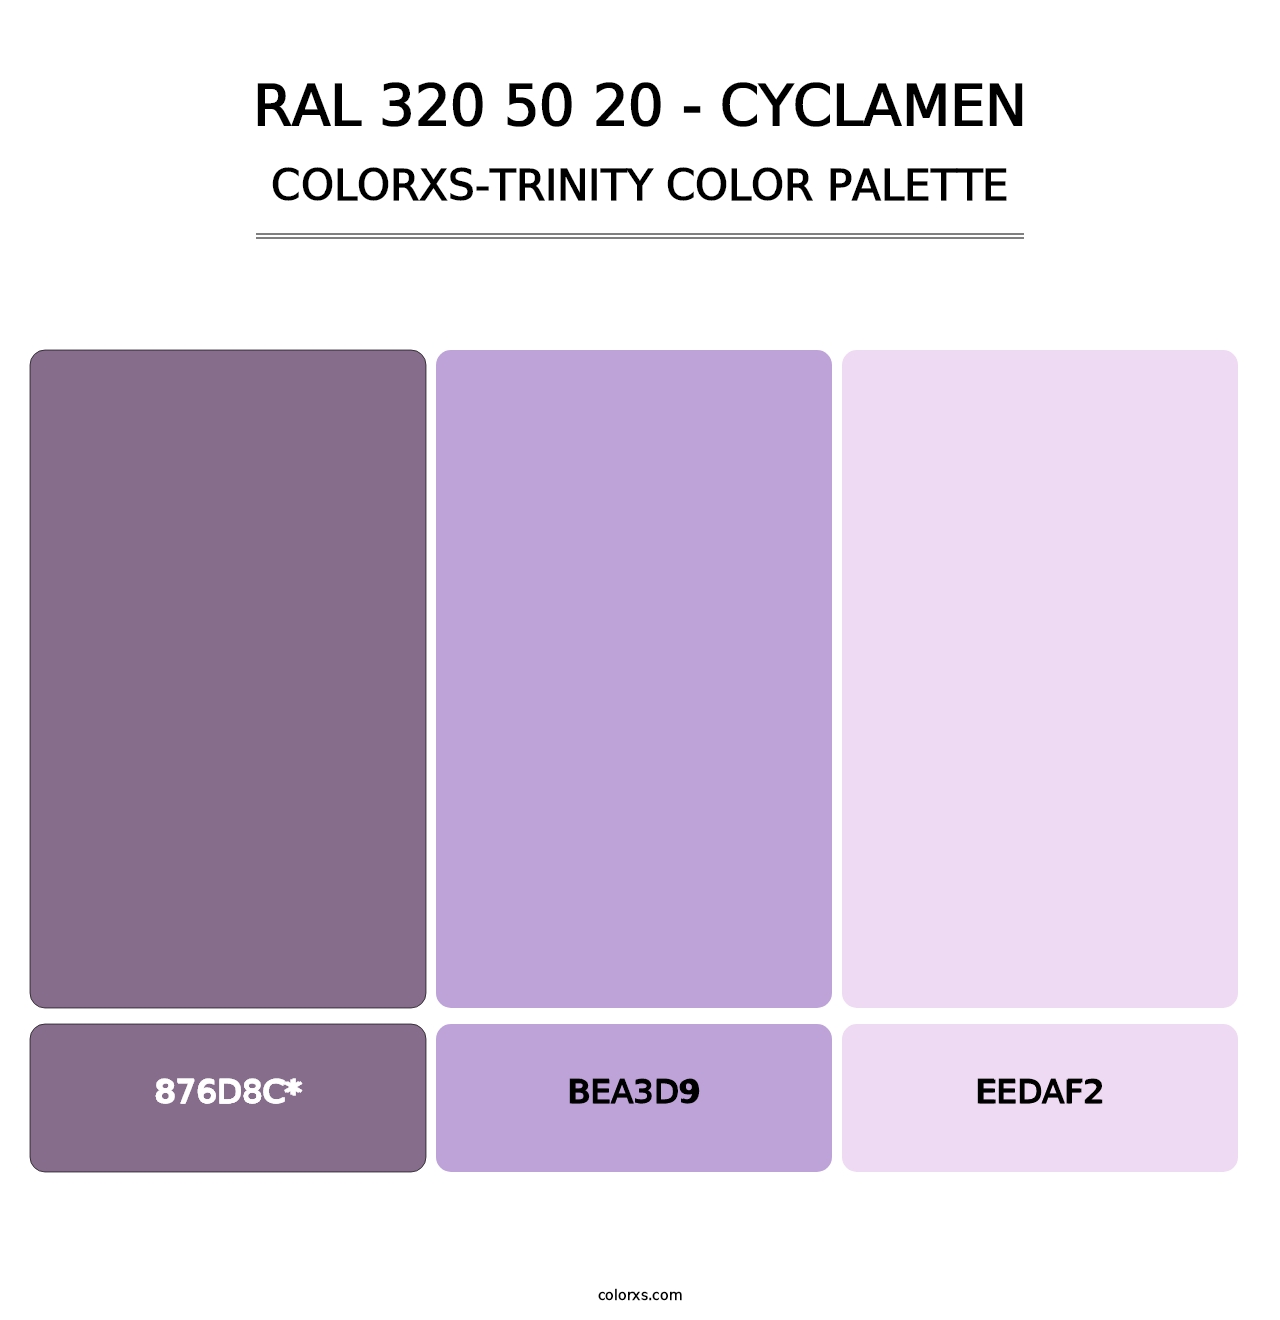 RAL 320 50 20 - Cyclamen - Colorxs Trinity Palette